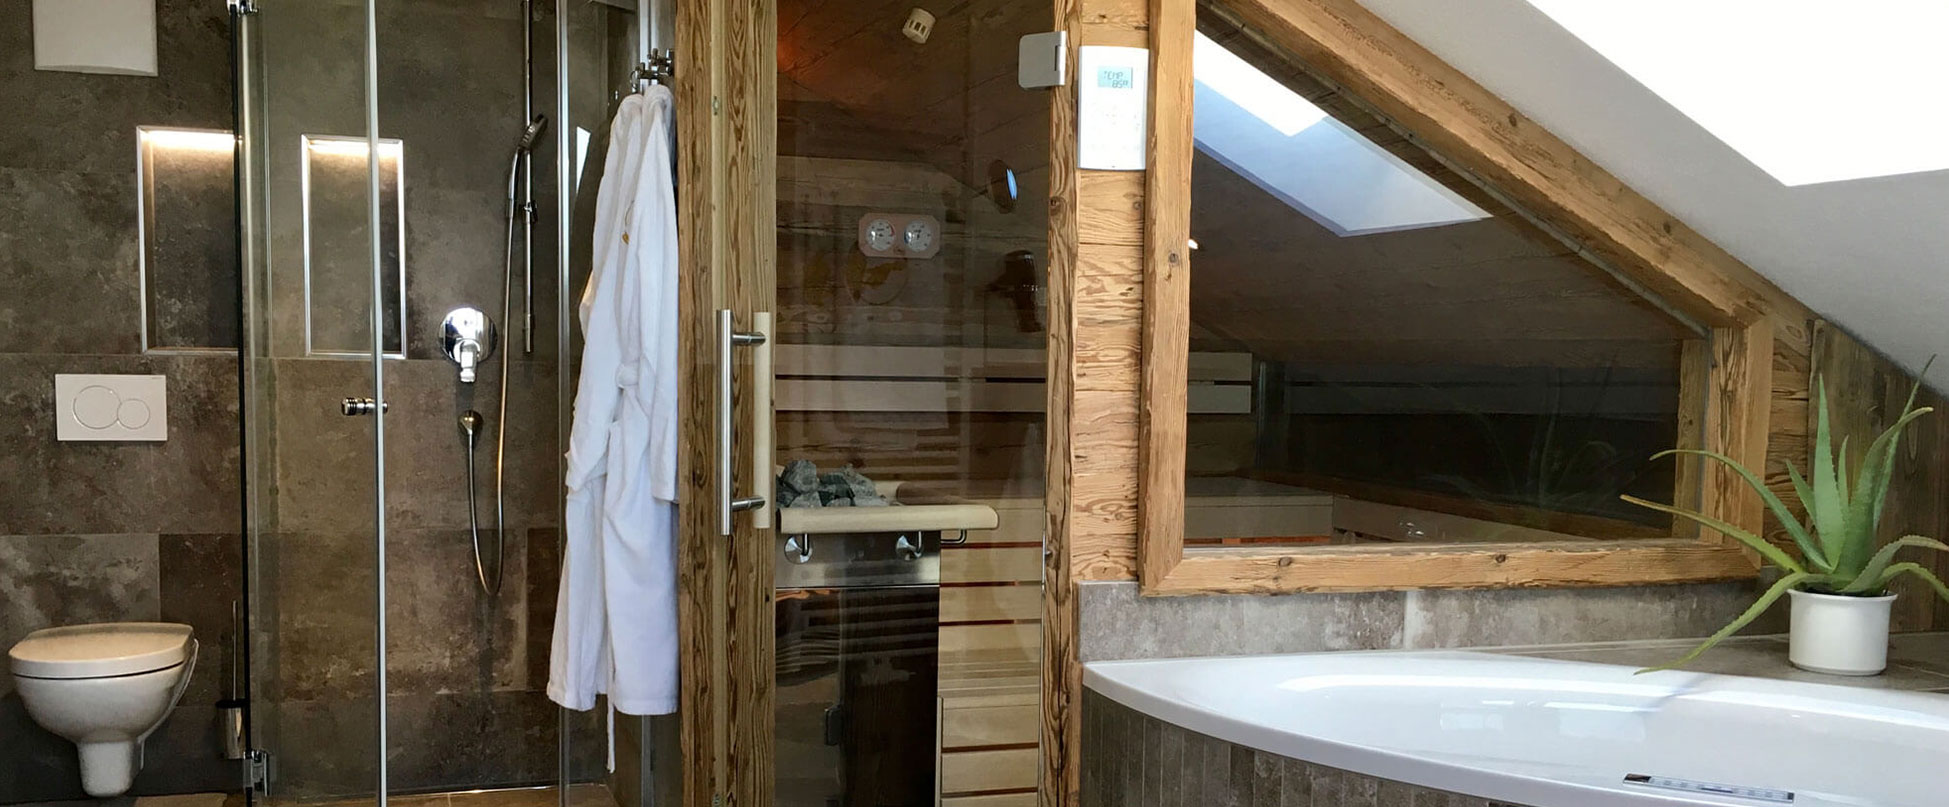 Bio-Sauna, Wellnessbereich in der Ferienwohnung Shania Residence im Chiemgau/ Bayern